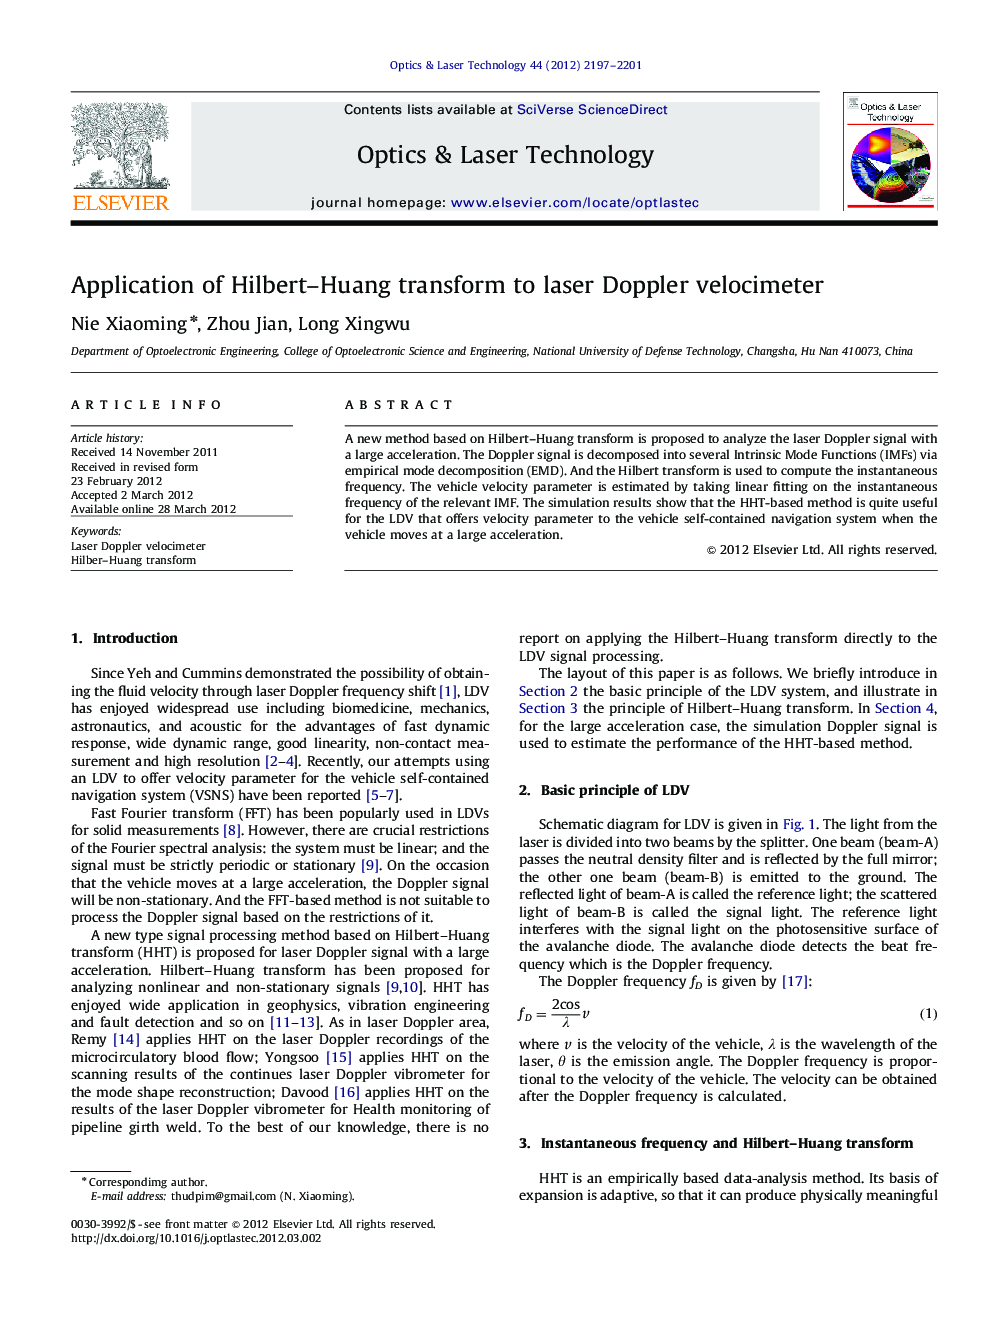 Application of Hilbert–Huang transform to laser Doppler velocimeter